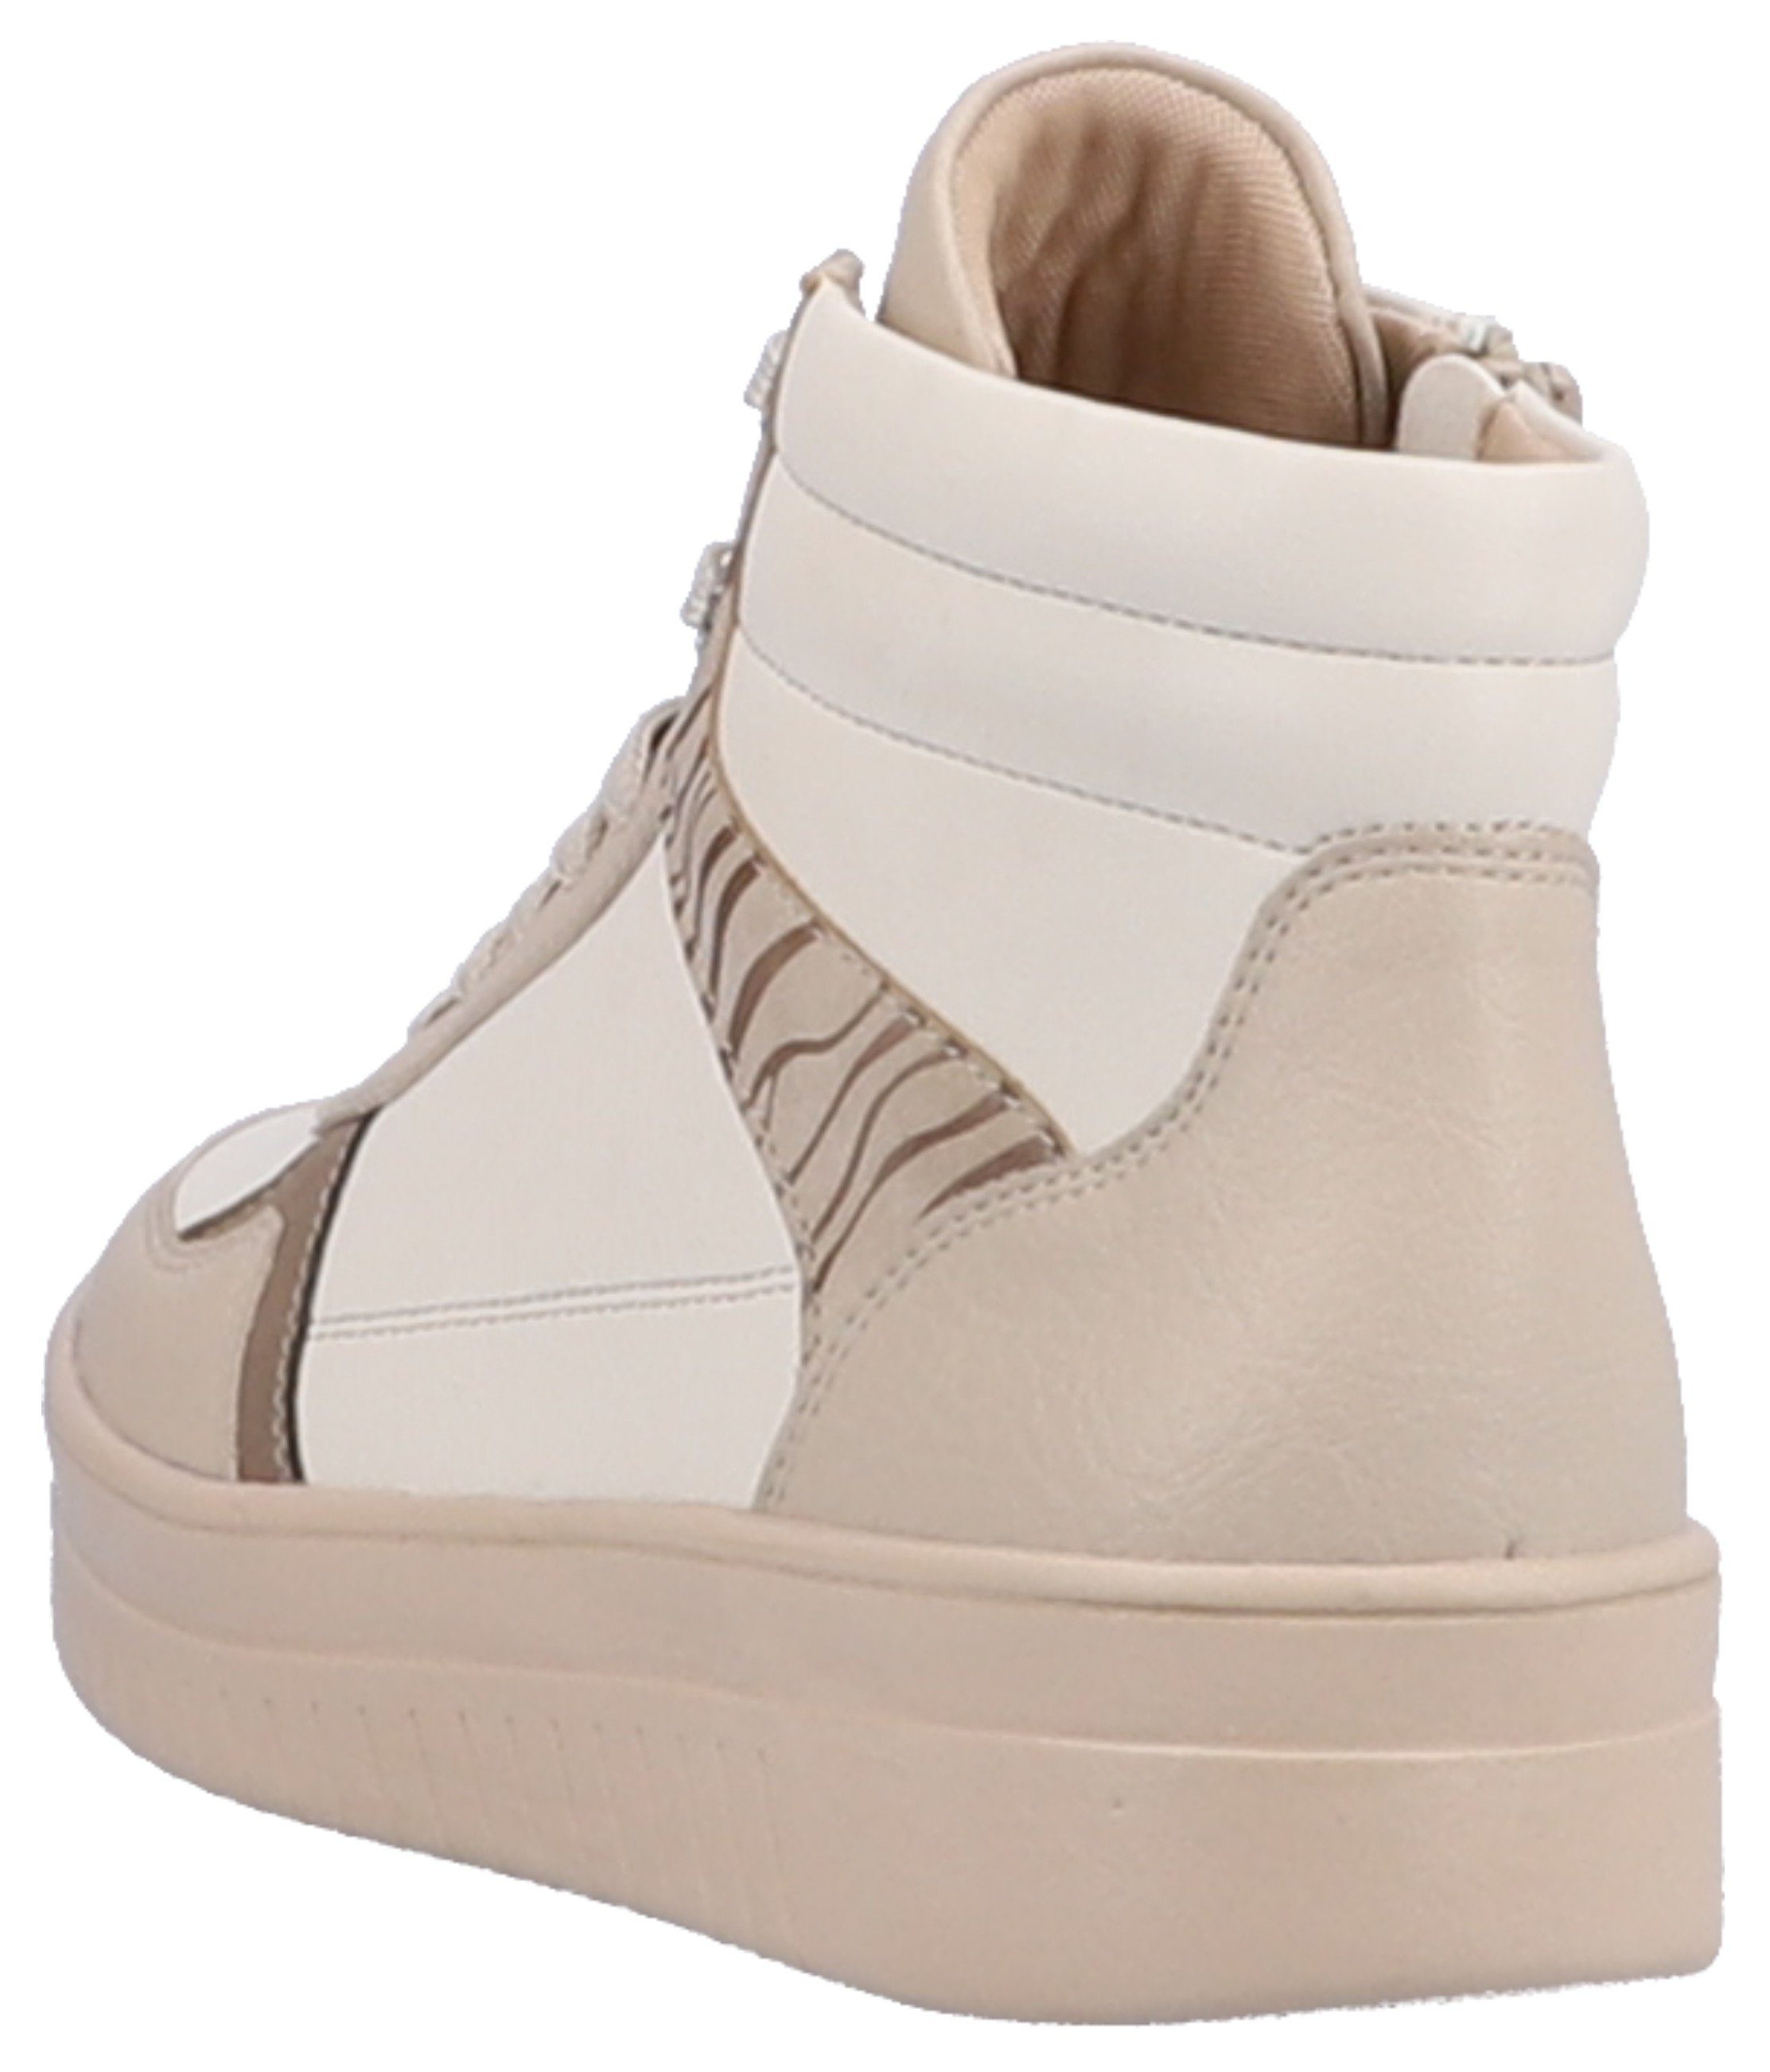 Remonte Sneaker mit hohem durch Tragekomfort offwhite kombiniert Soft-Foam Ausstattung